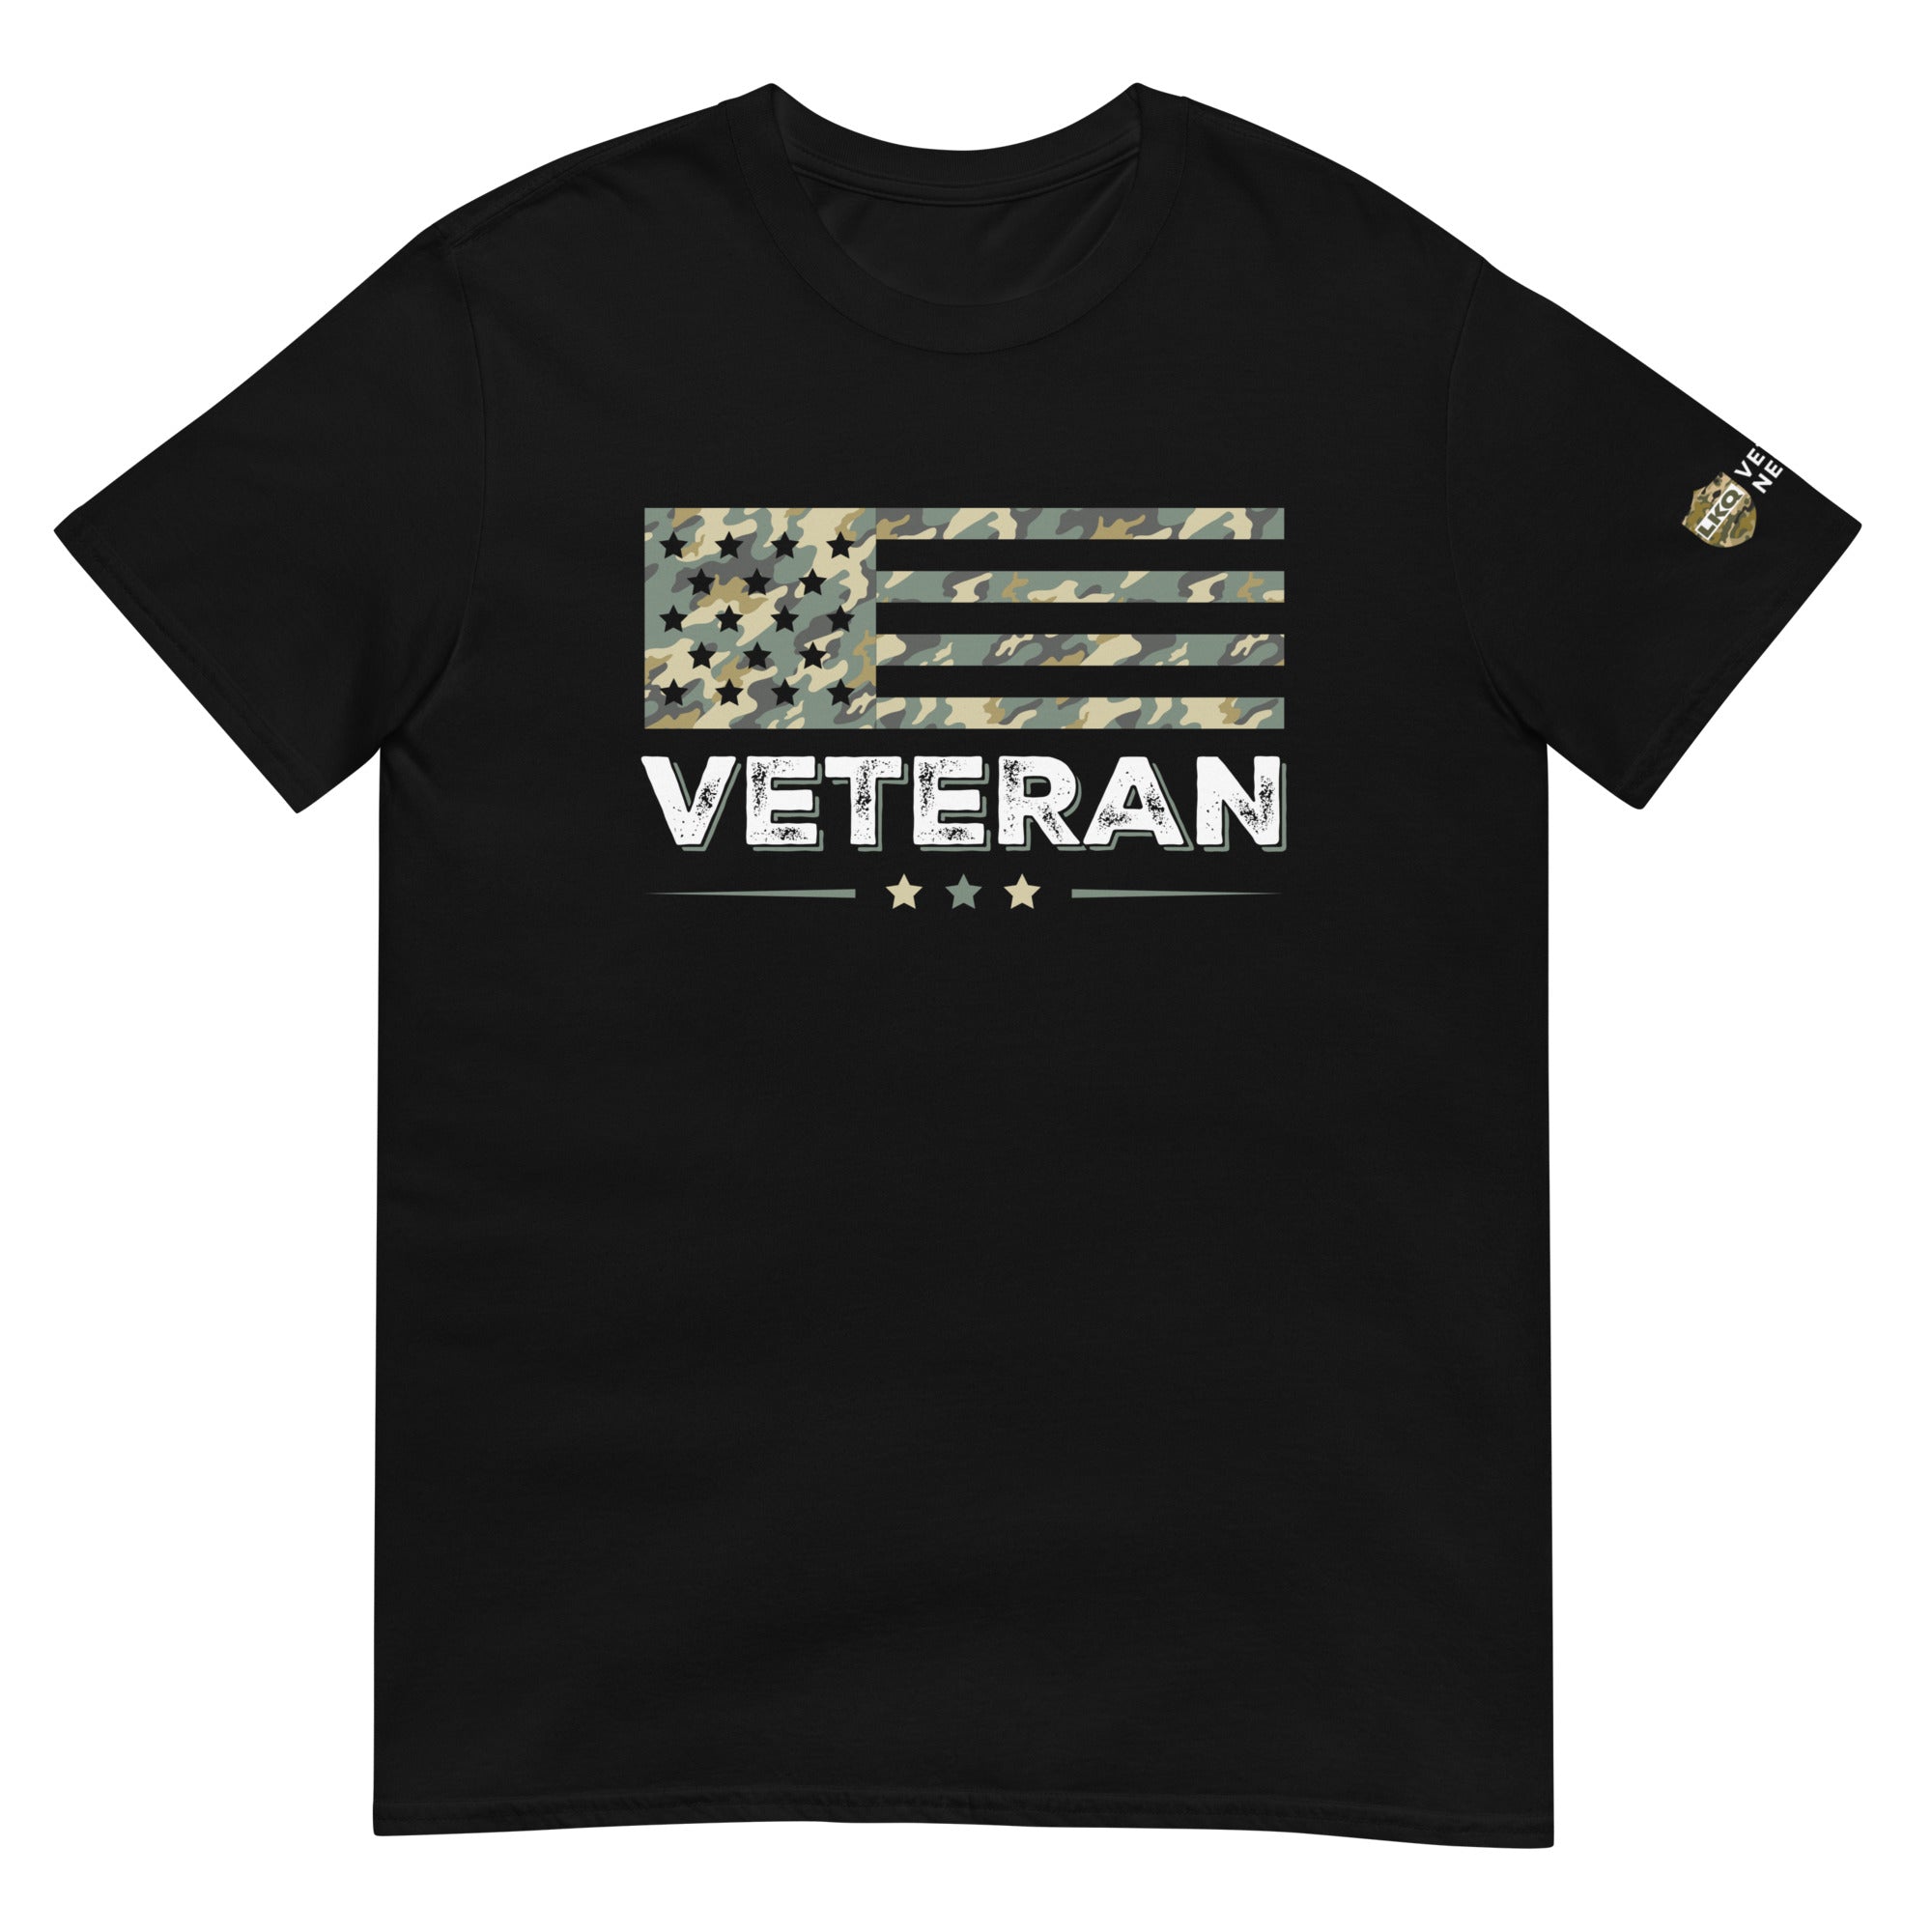 LKQ Veterans Network T-Shirt